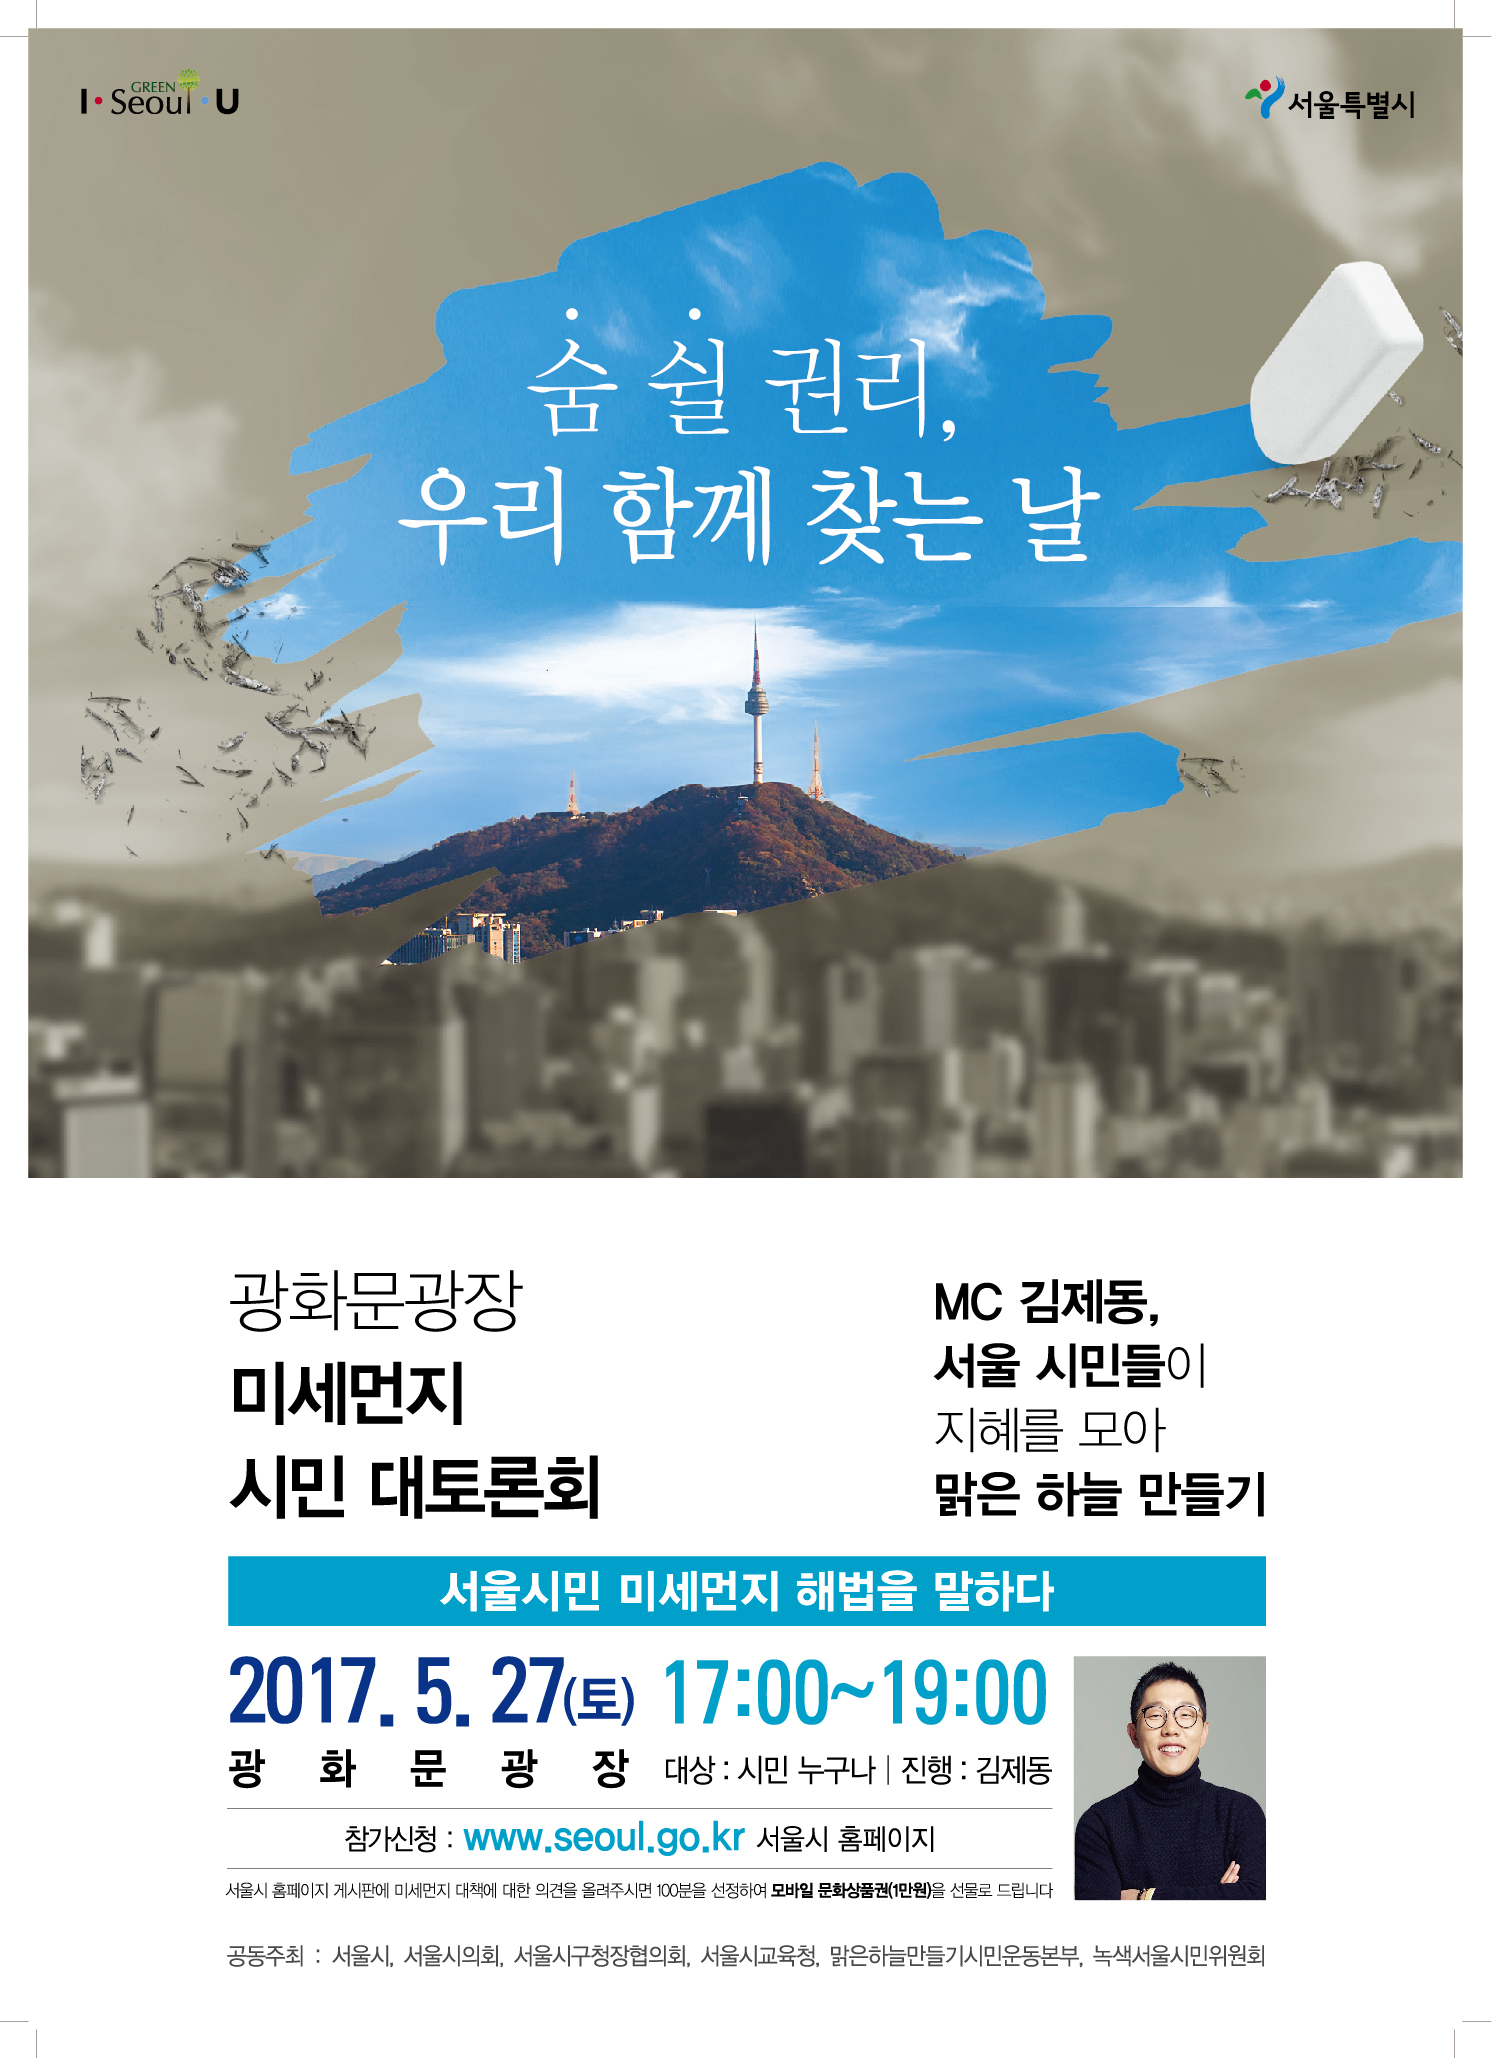 광화문광장 미세먼지 시민대토론회 사전 인식조사